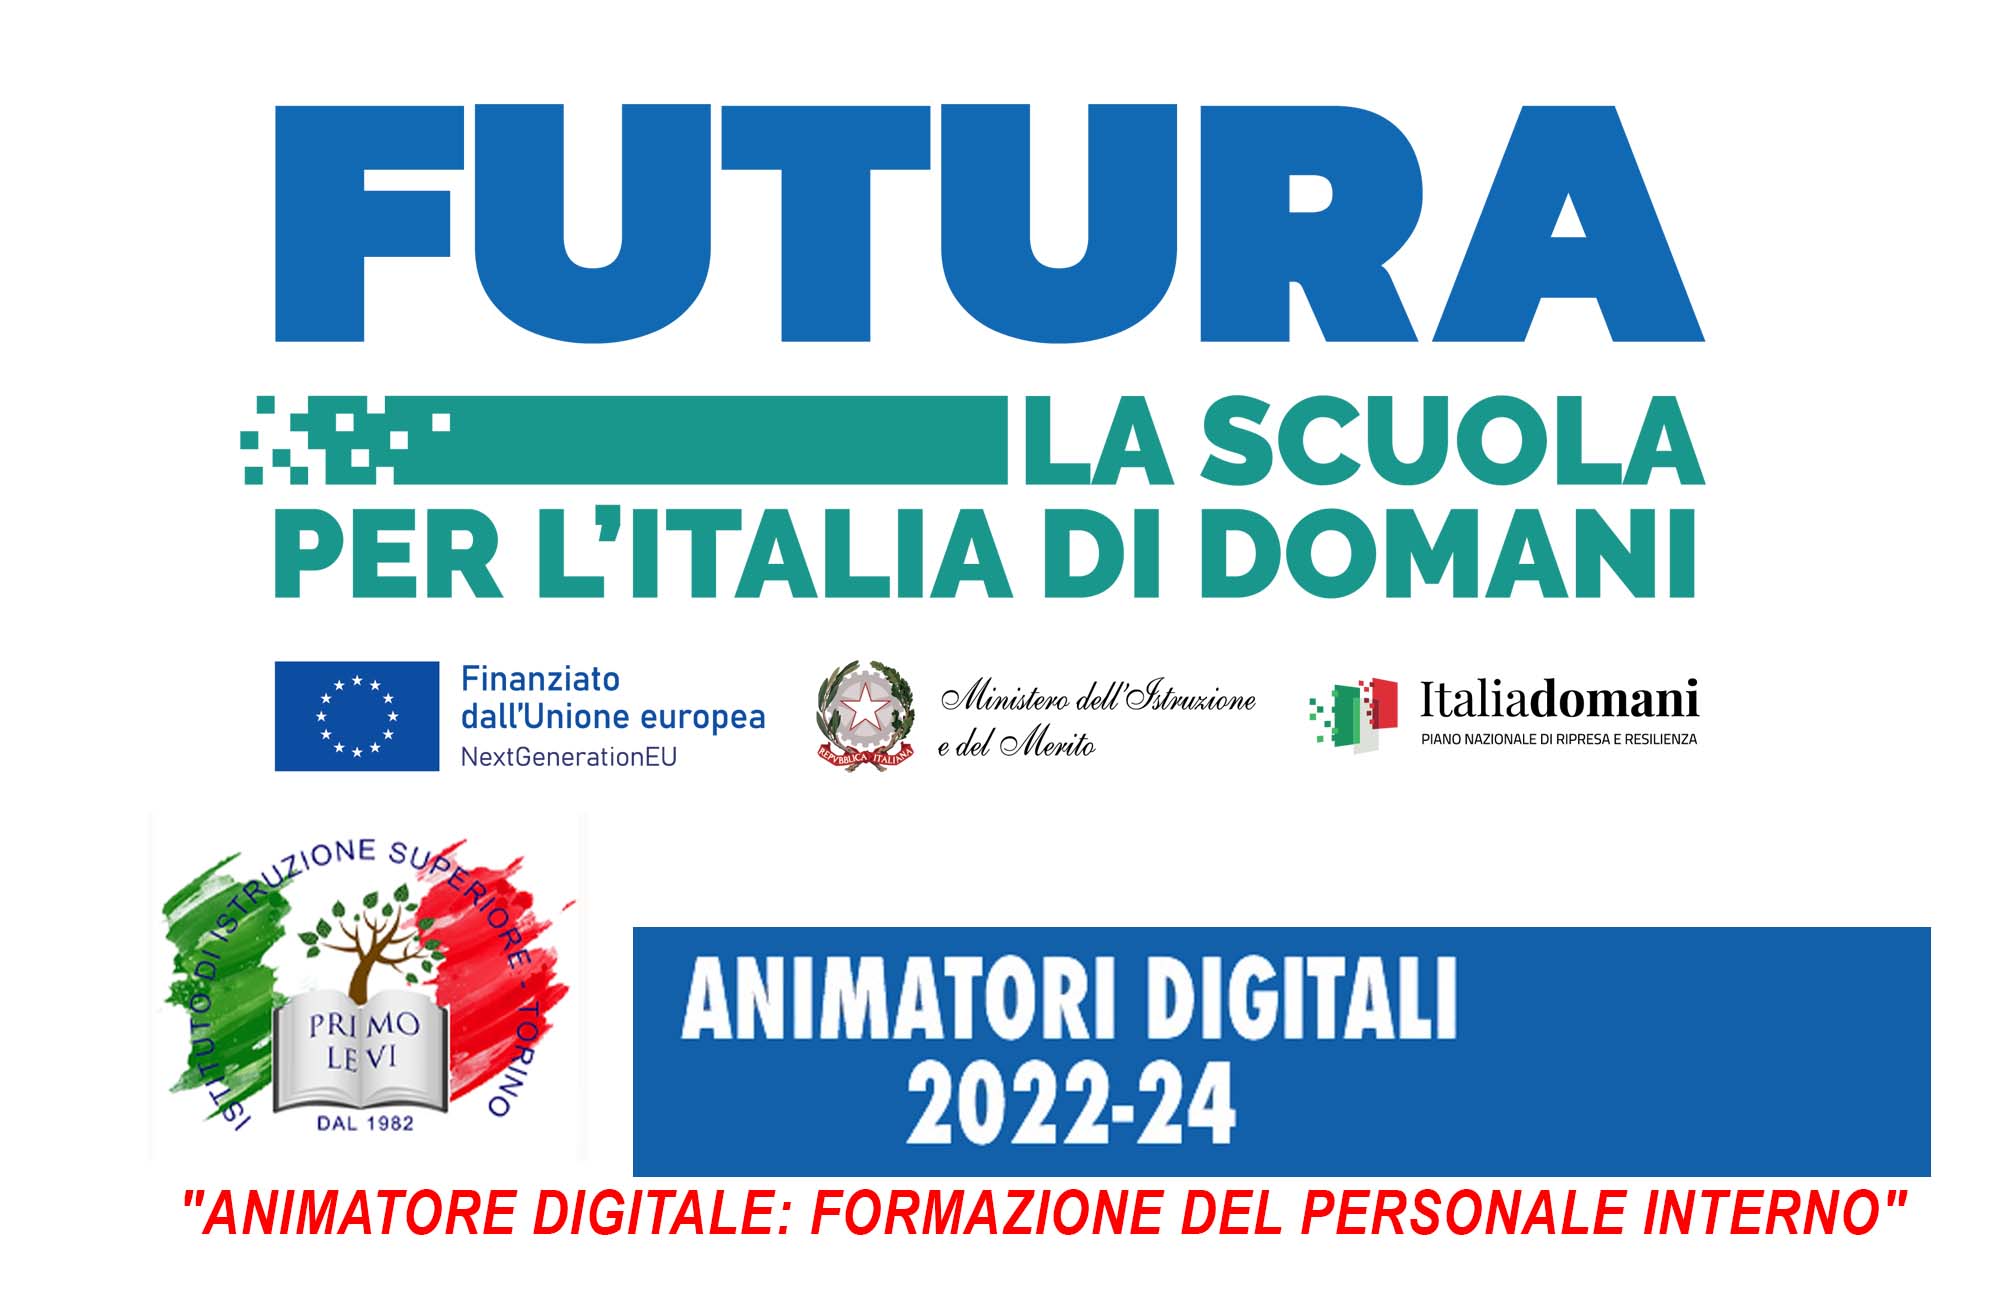 "Strumenti per l'innovazione digitale": avviso inizio corso di formazione per i docenti Scuola Futura "Animatori digitali 2022-2024"